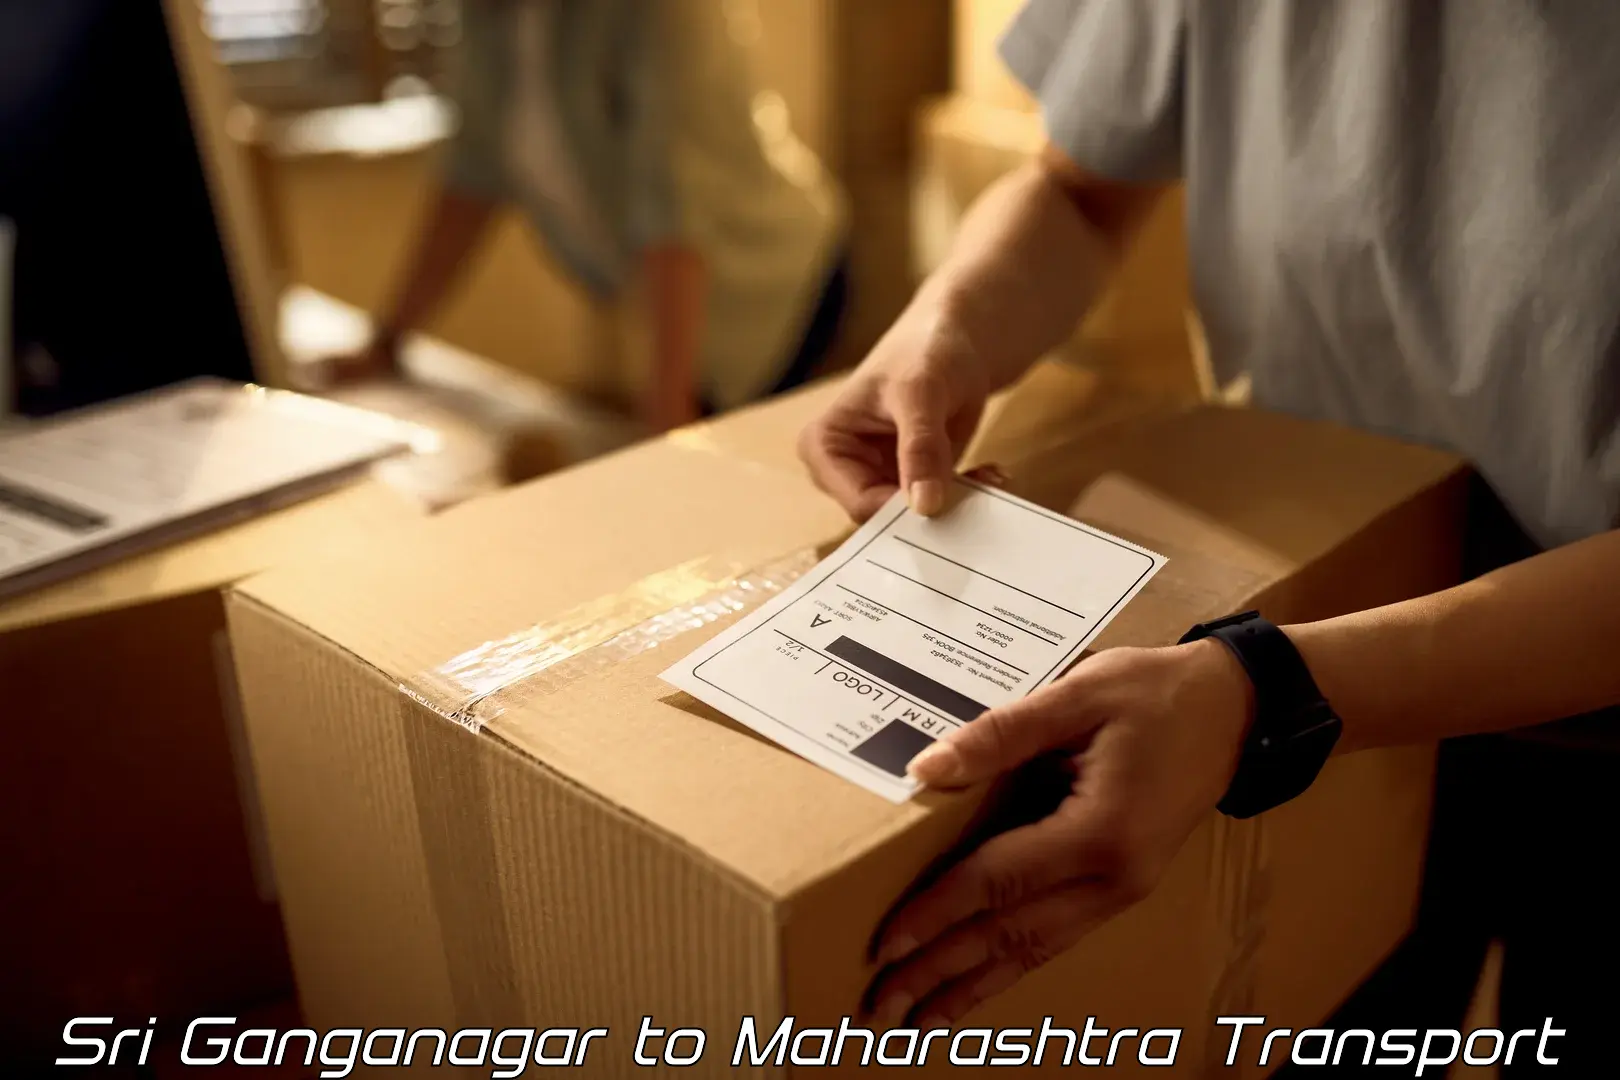 Transport services in Sri Ganganagar to Waranga Phata